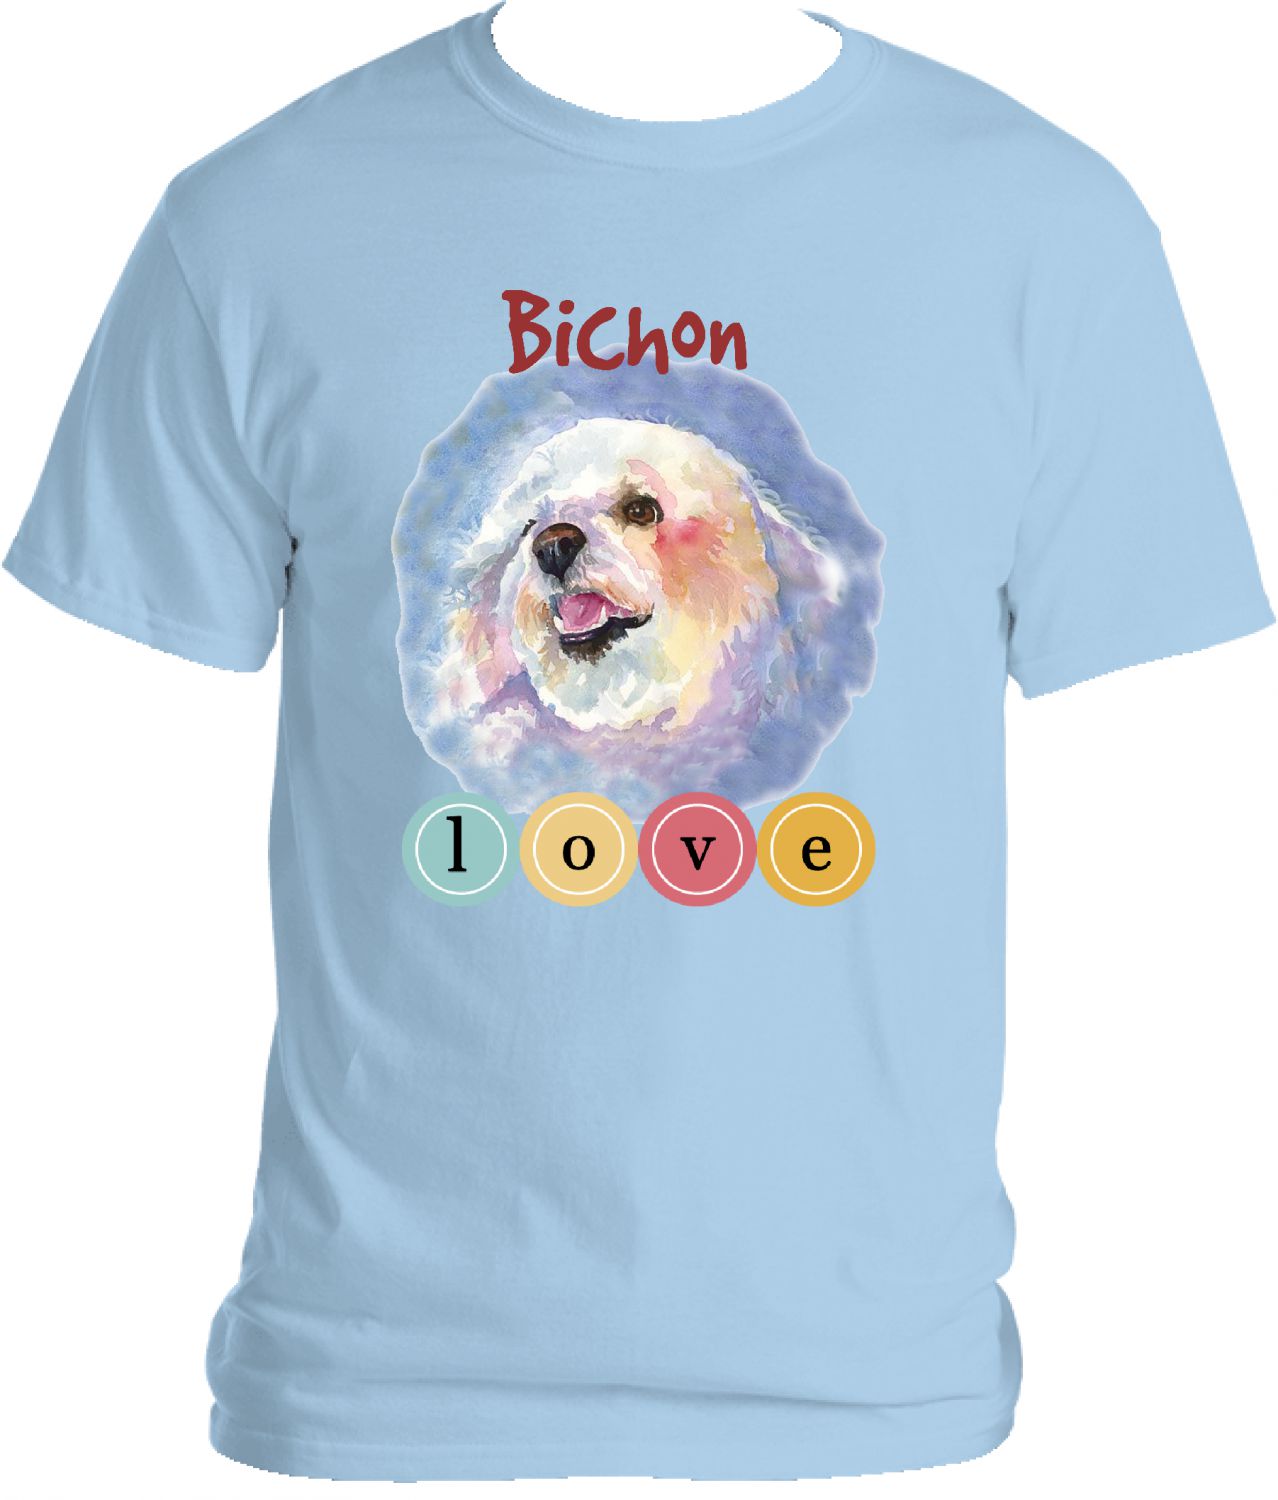 Bichon Love Tee Shirt (BLUE).